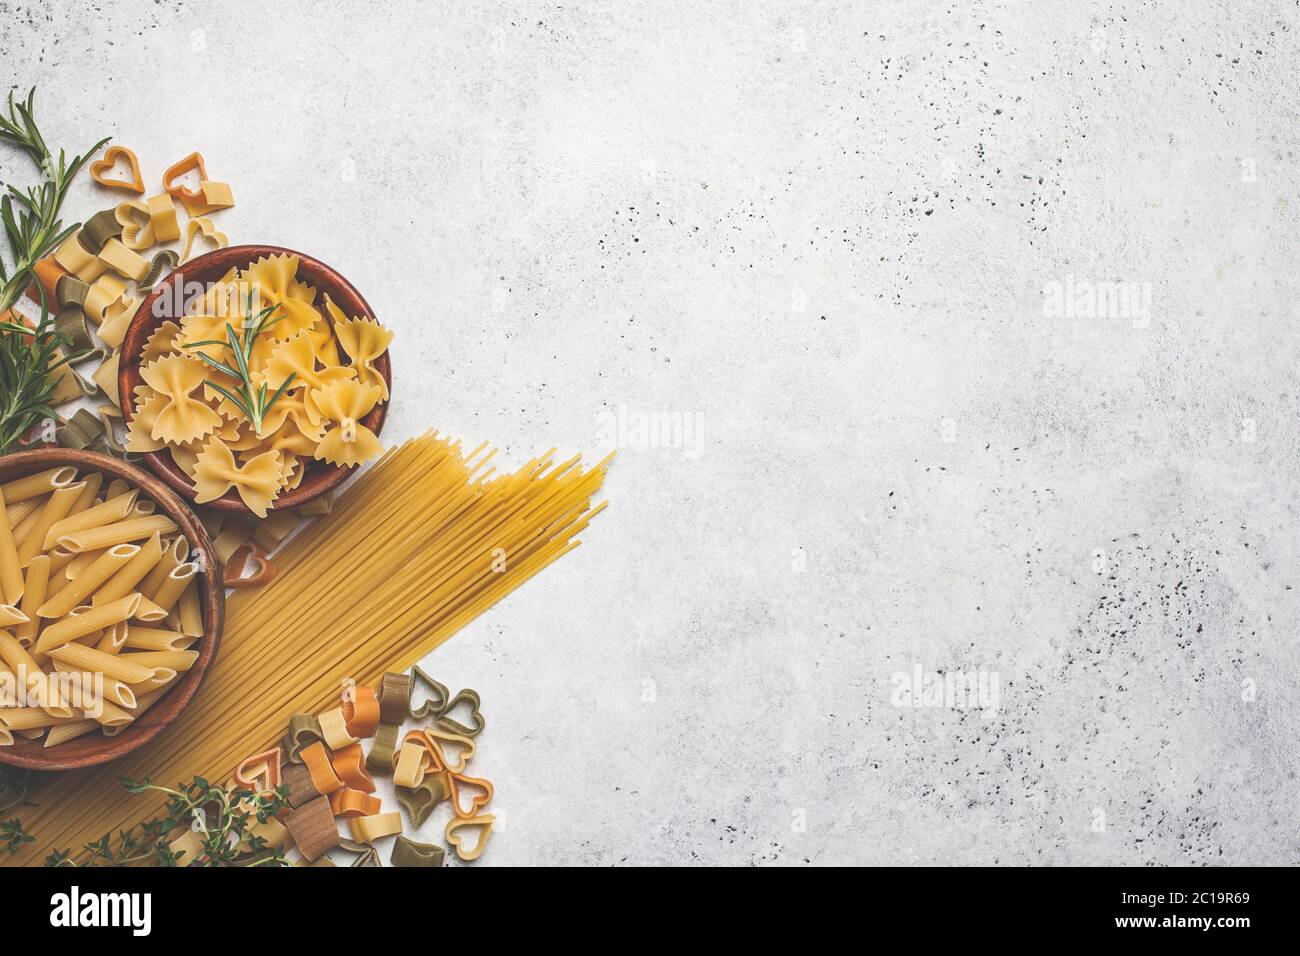 Nền pasta sống mang đến sự tươi mới, sạch sẽ và trẻ trung cho không gian của bạn. Những mảng màu sáng tạo nên sự sinh động, đầy màu sắc với tinh túy của các loại pasta đặc trưng. Hãy cùng khám phá hình ảnh tuyệt đẹp này để tạo ra một không gian ấn tượng nhất cho nhà hàng của bạn.